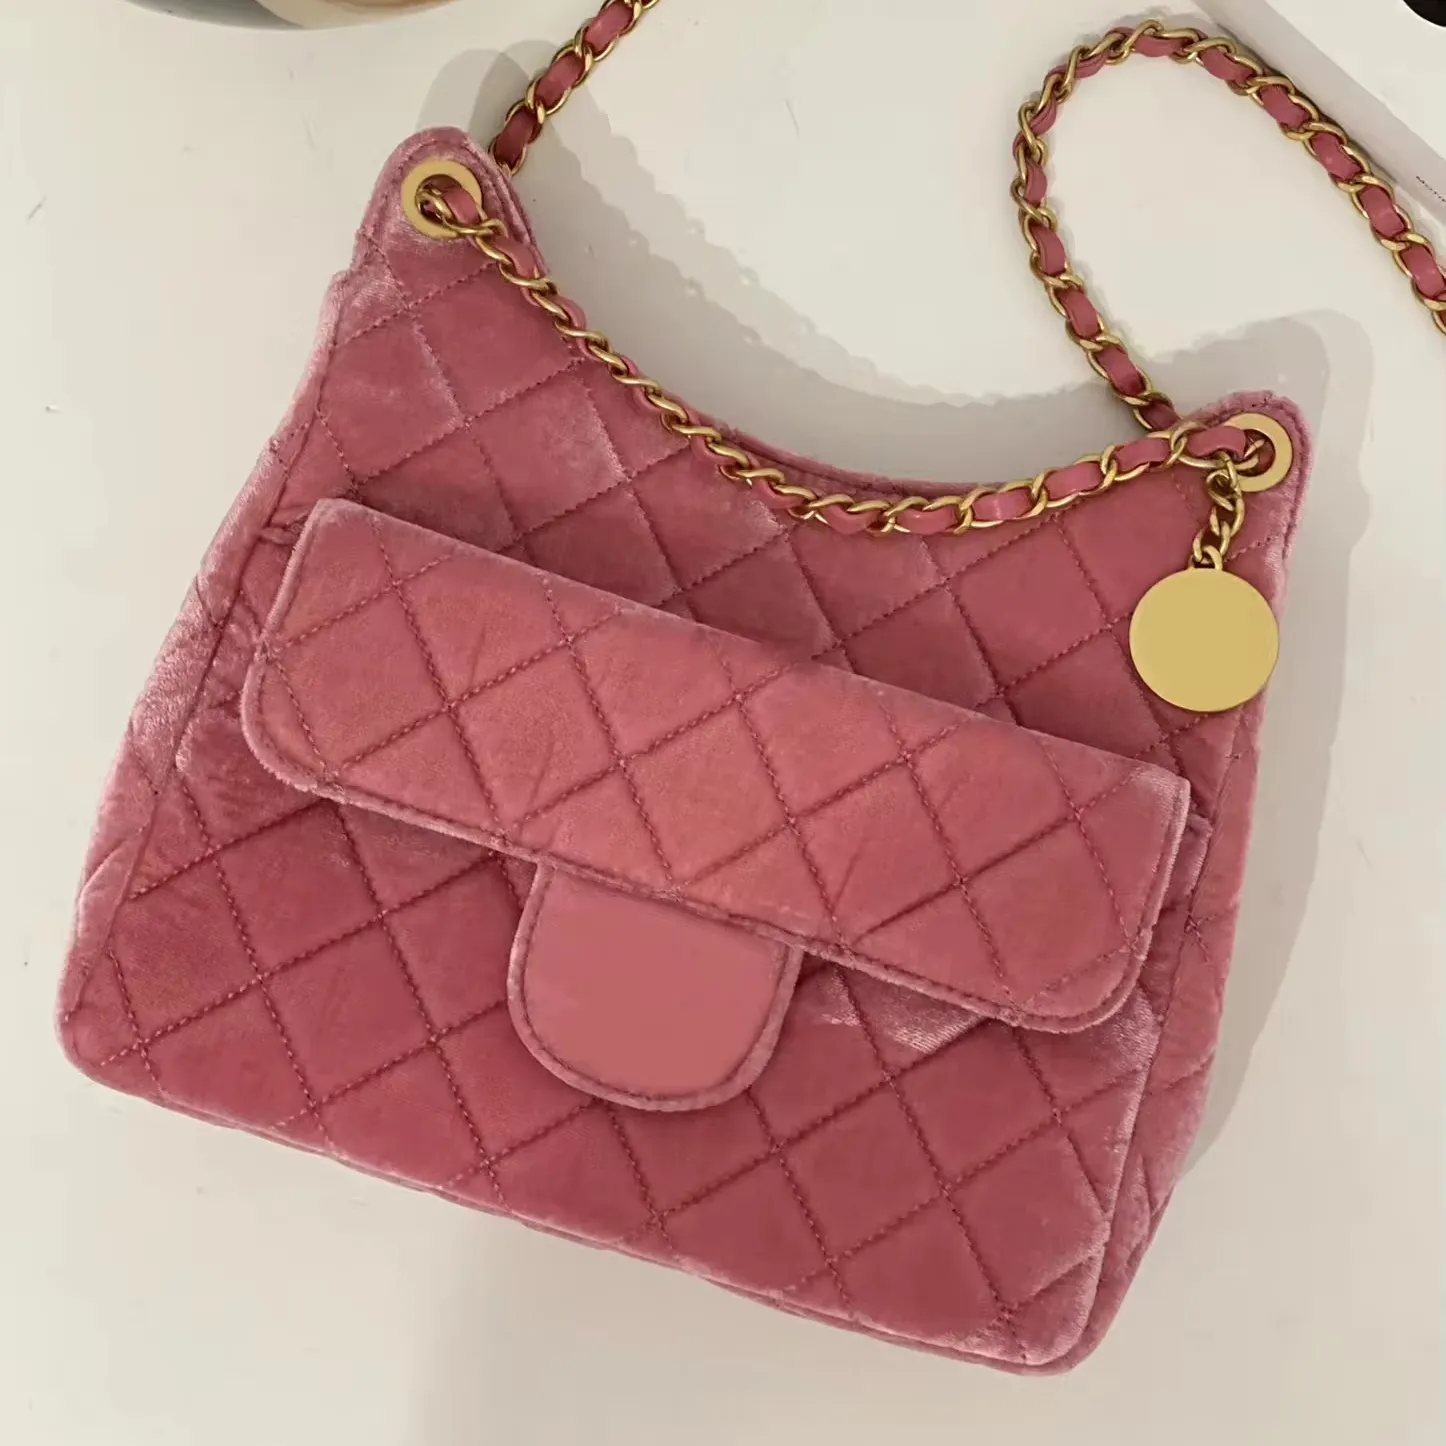 수제 가방 하이 퀄리티 럭셔리 브랜드 가방 디자인 여성 가방 5A 품질 Colour23B 핑크 벨벳 Tmall 요정 트럼펫